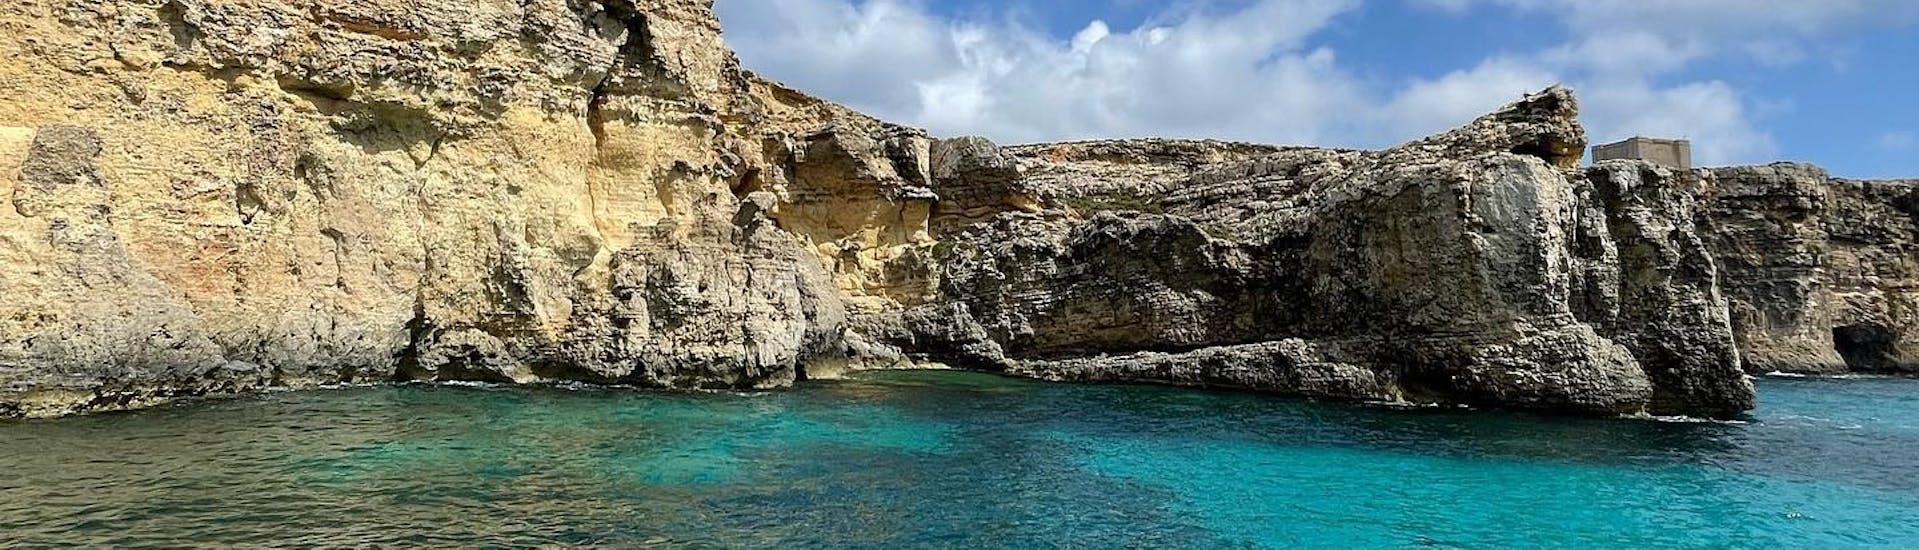 Les formations rocheuses vu depuis le bateau lors de la Balade en bateau à Comino avec Snorkeling & Baignade au Lagon Bleu avec Oh Yeah Malta.